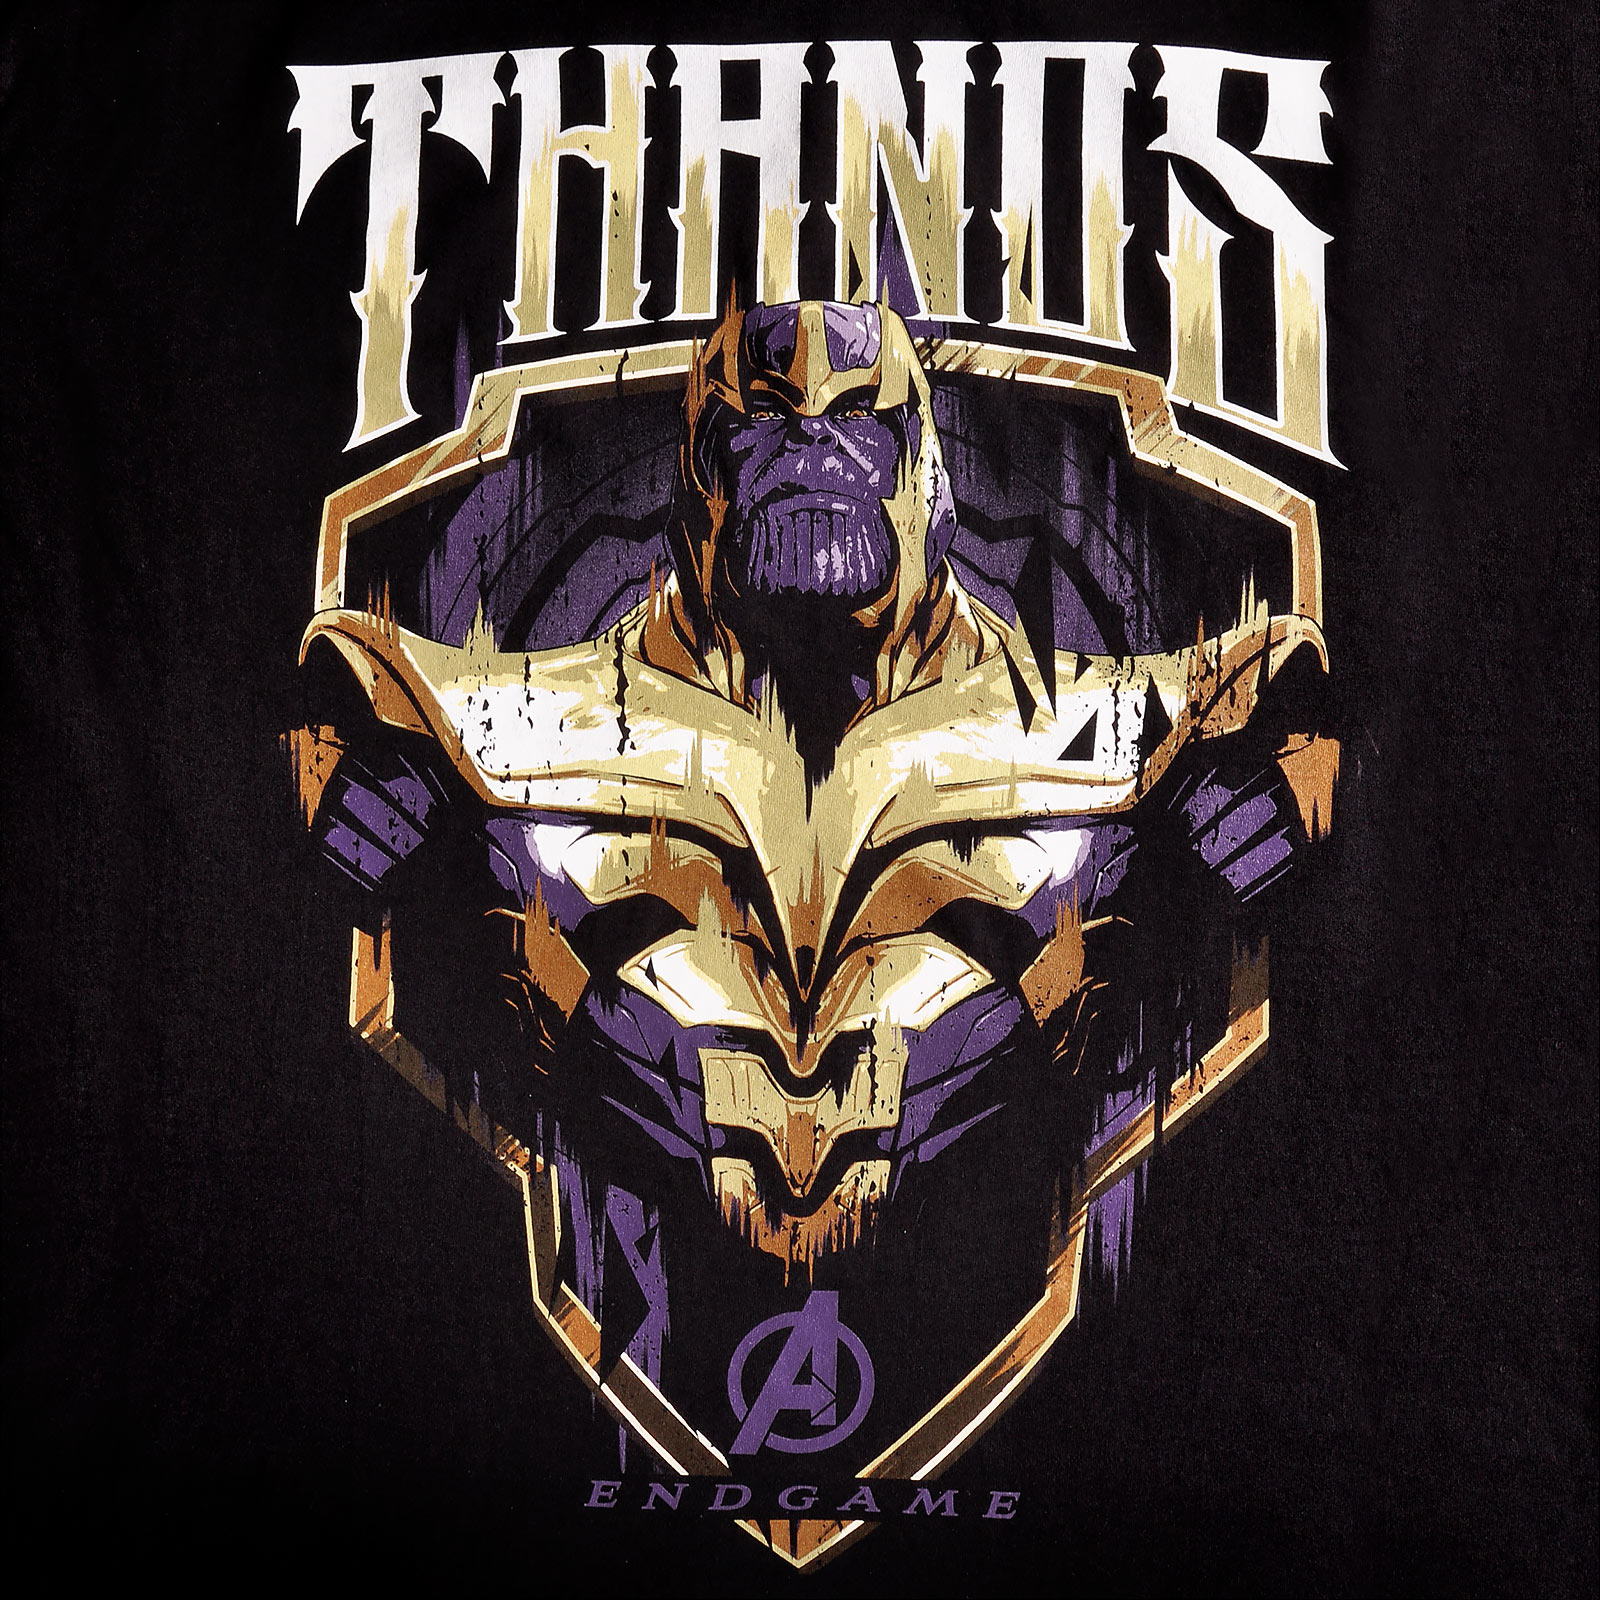 Avengers - Thanos T-Shirt schwarz